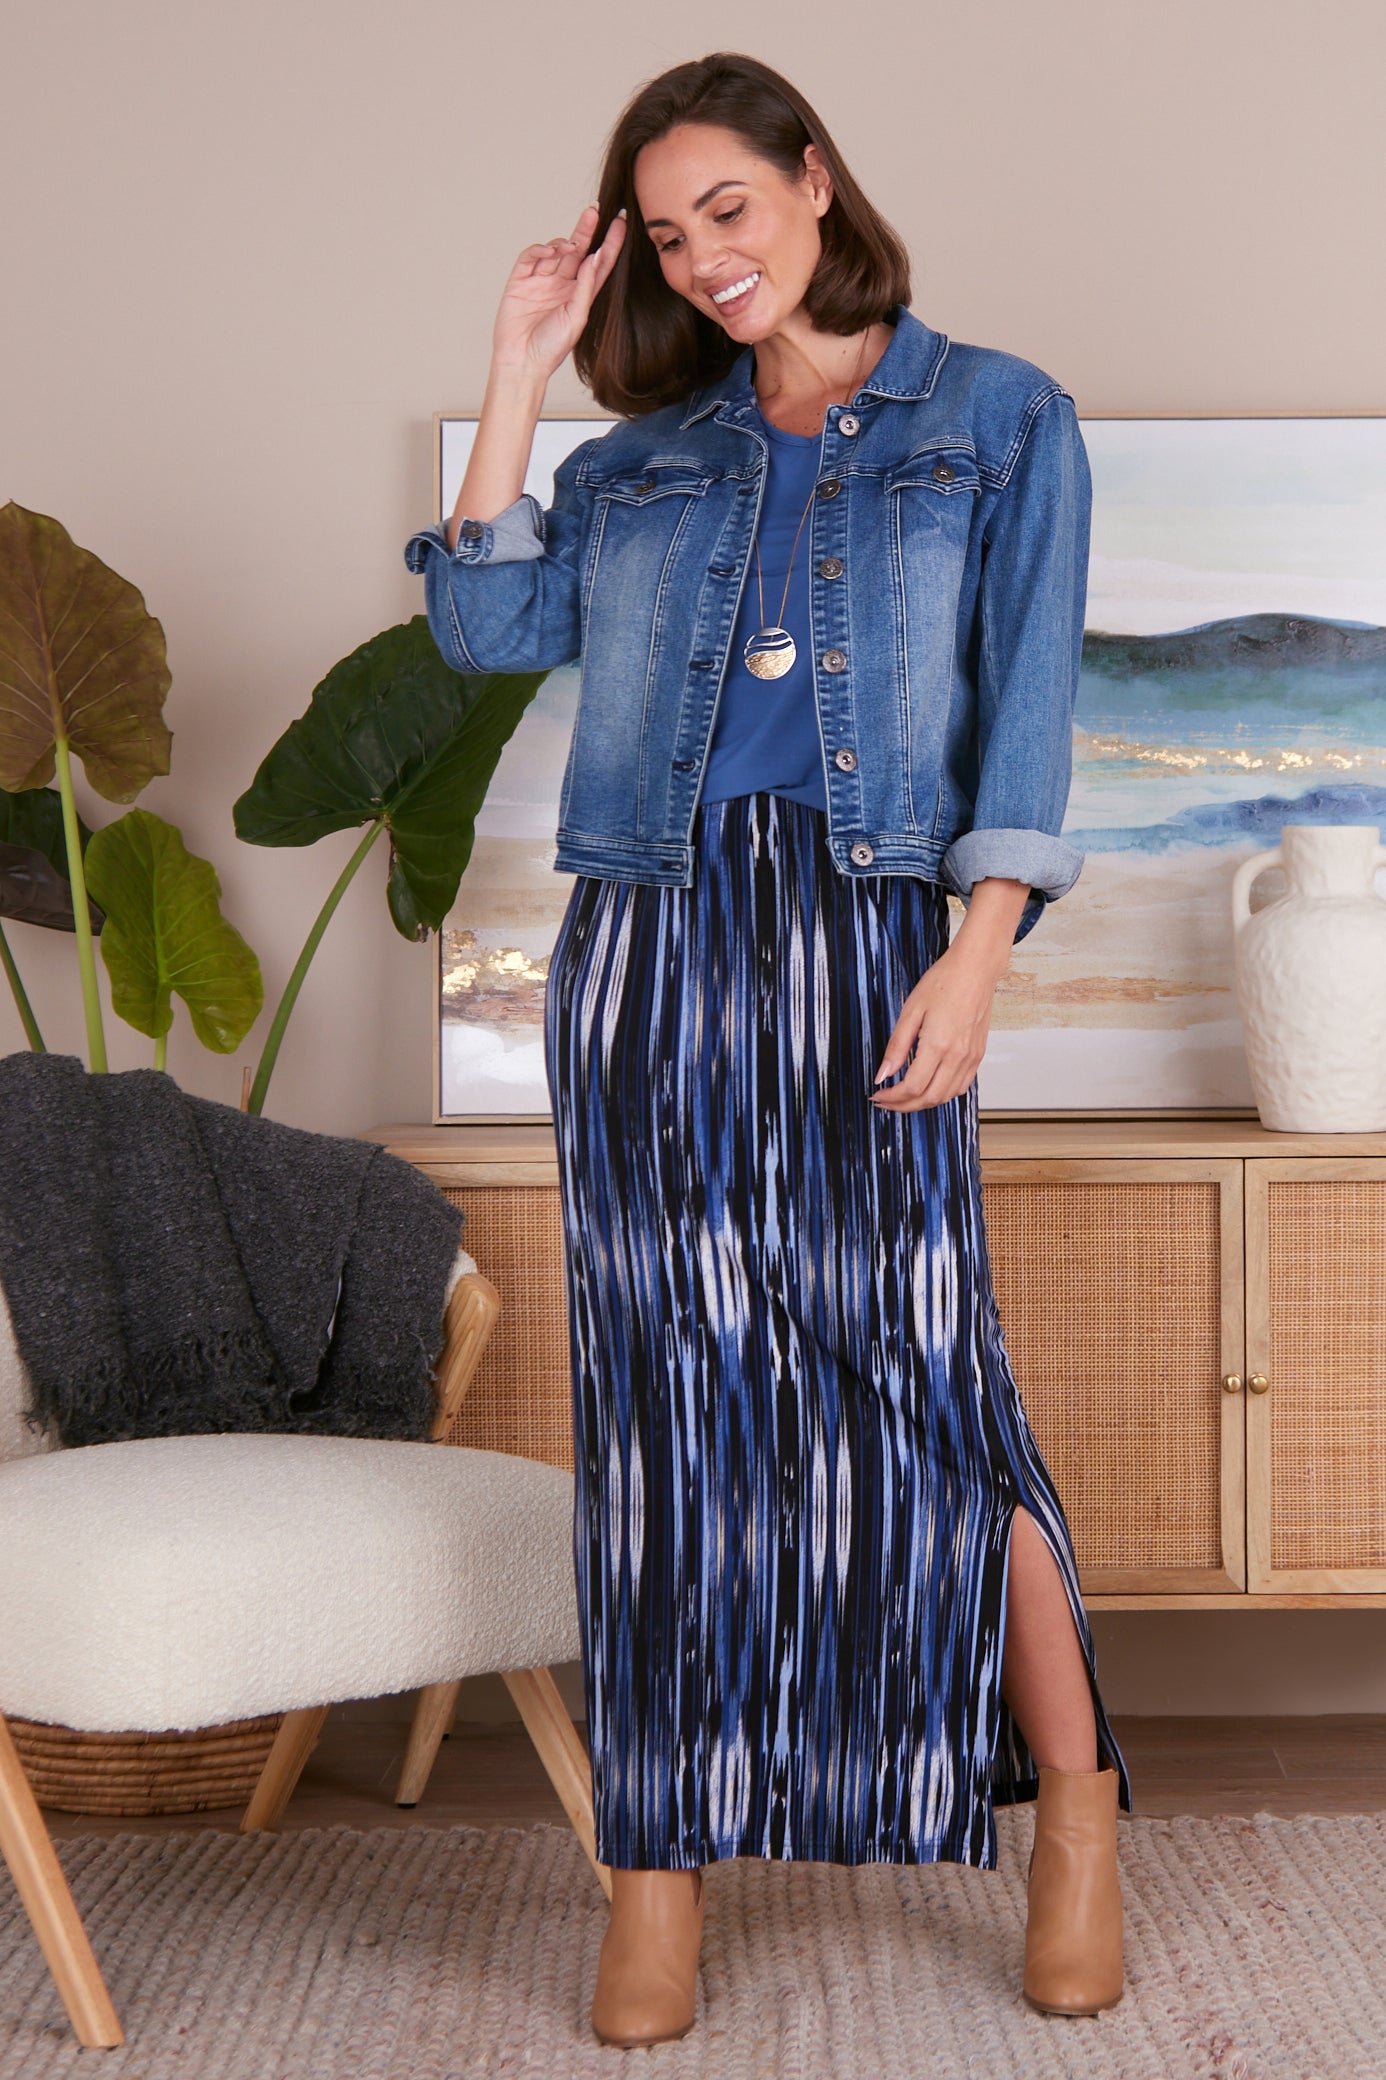 Adelaide Skirt - Blue/Stripe Print